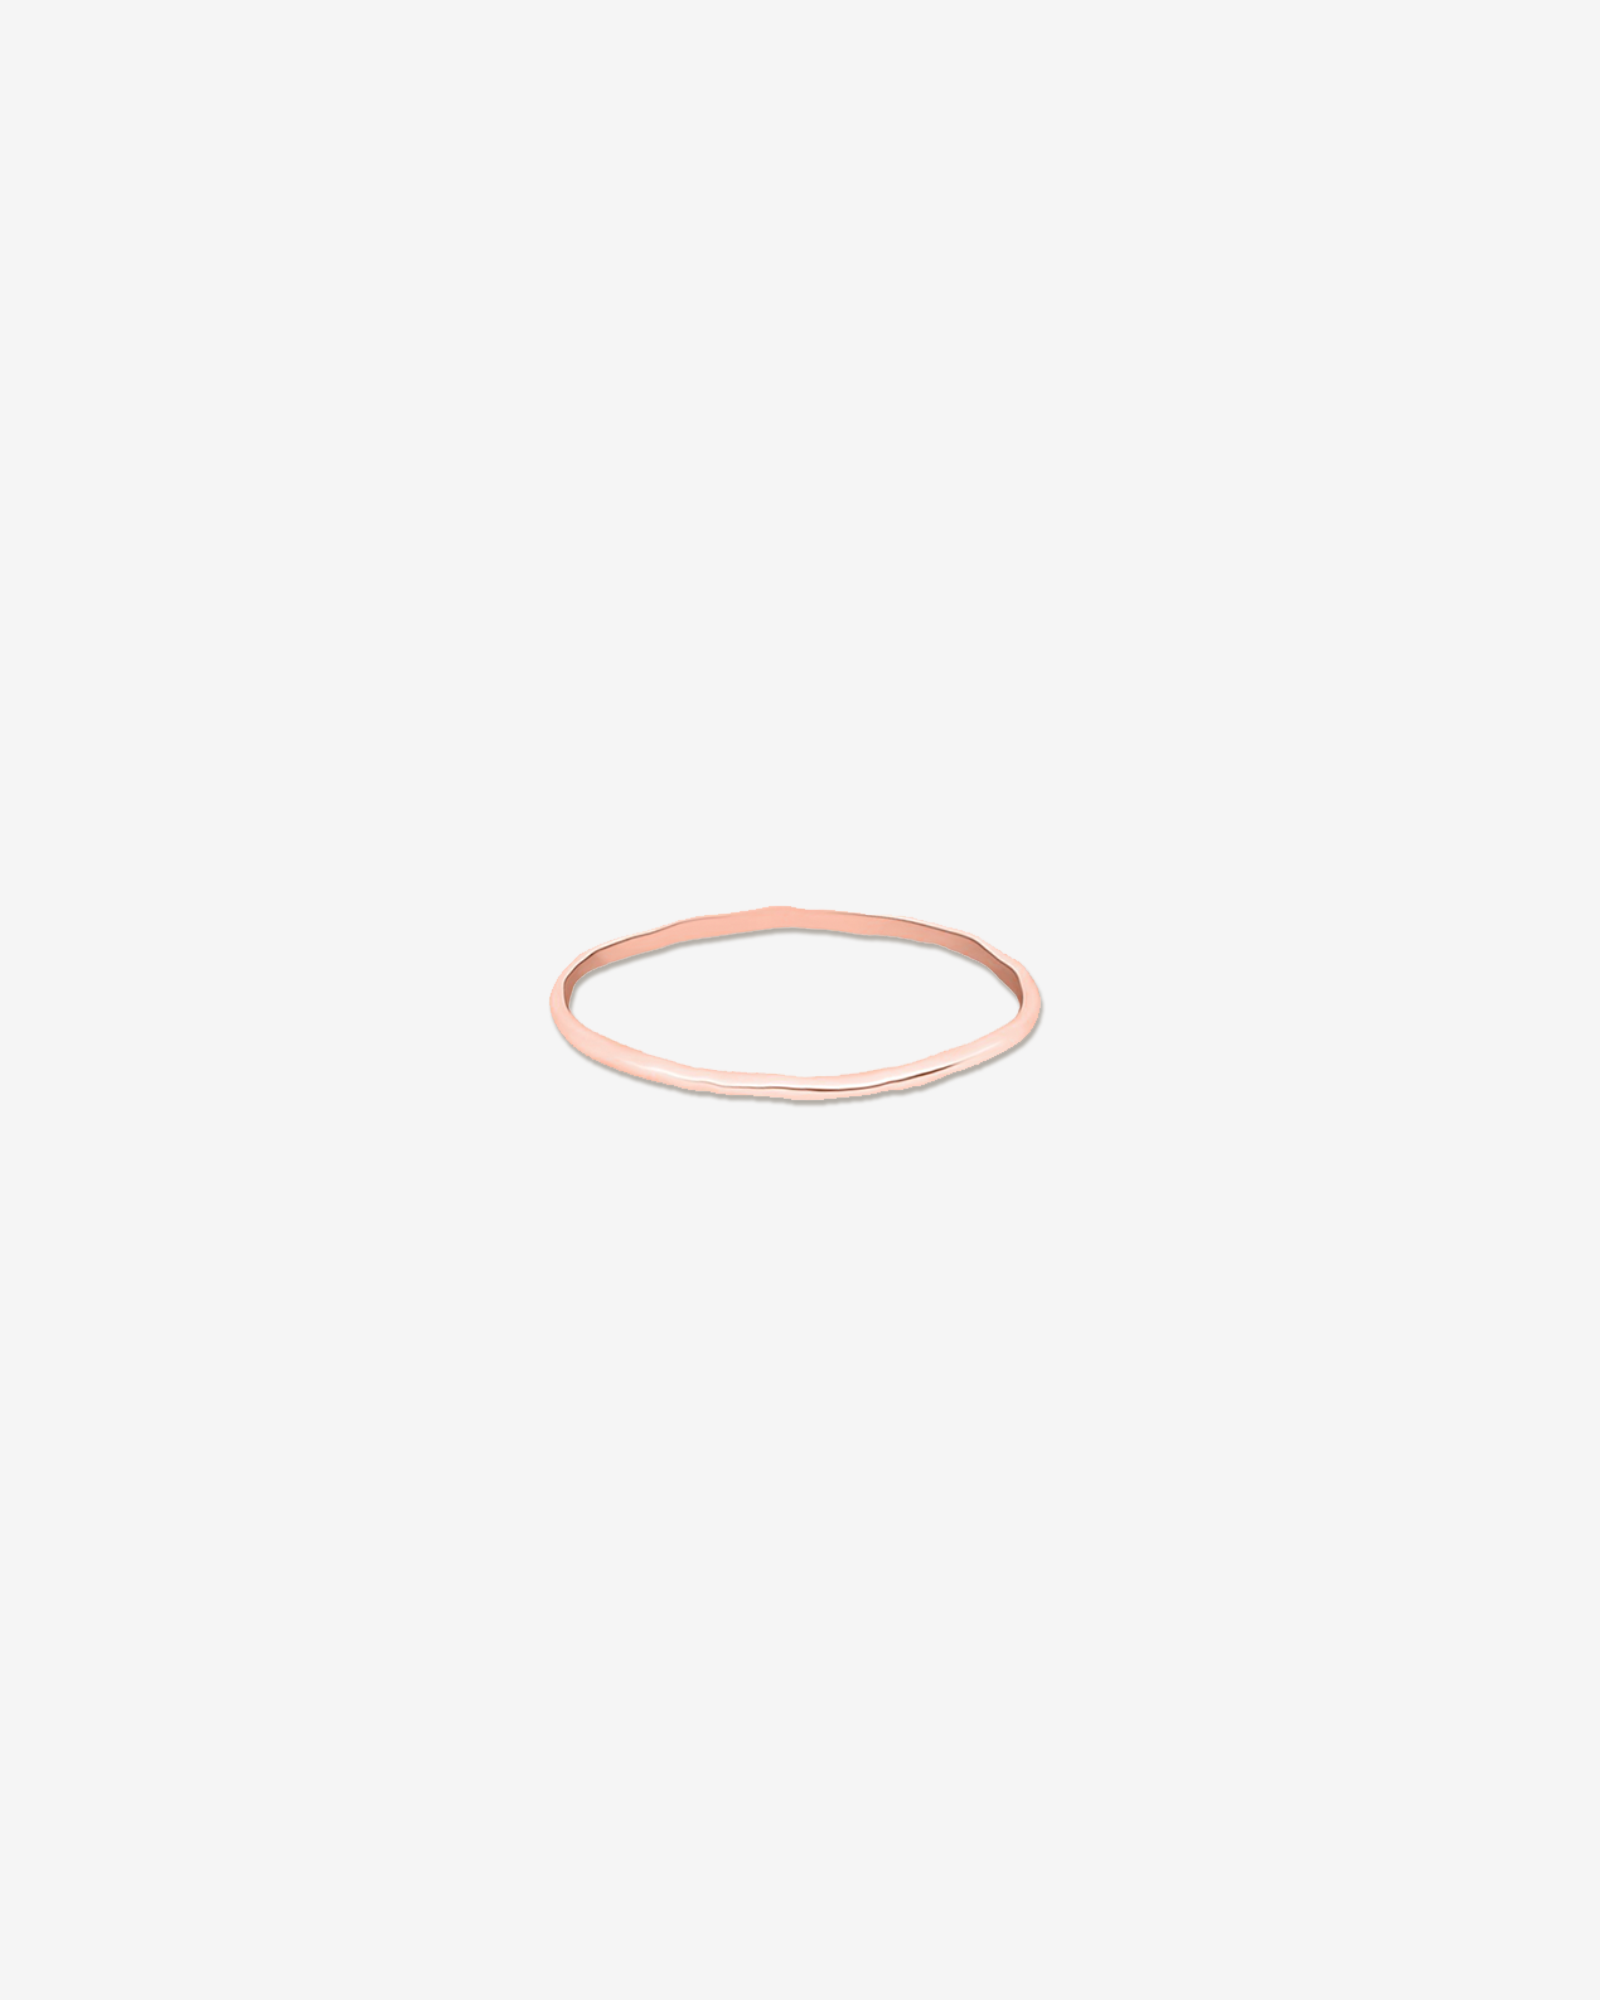 Tomboy – Stacker Ring